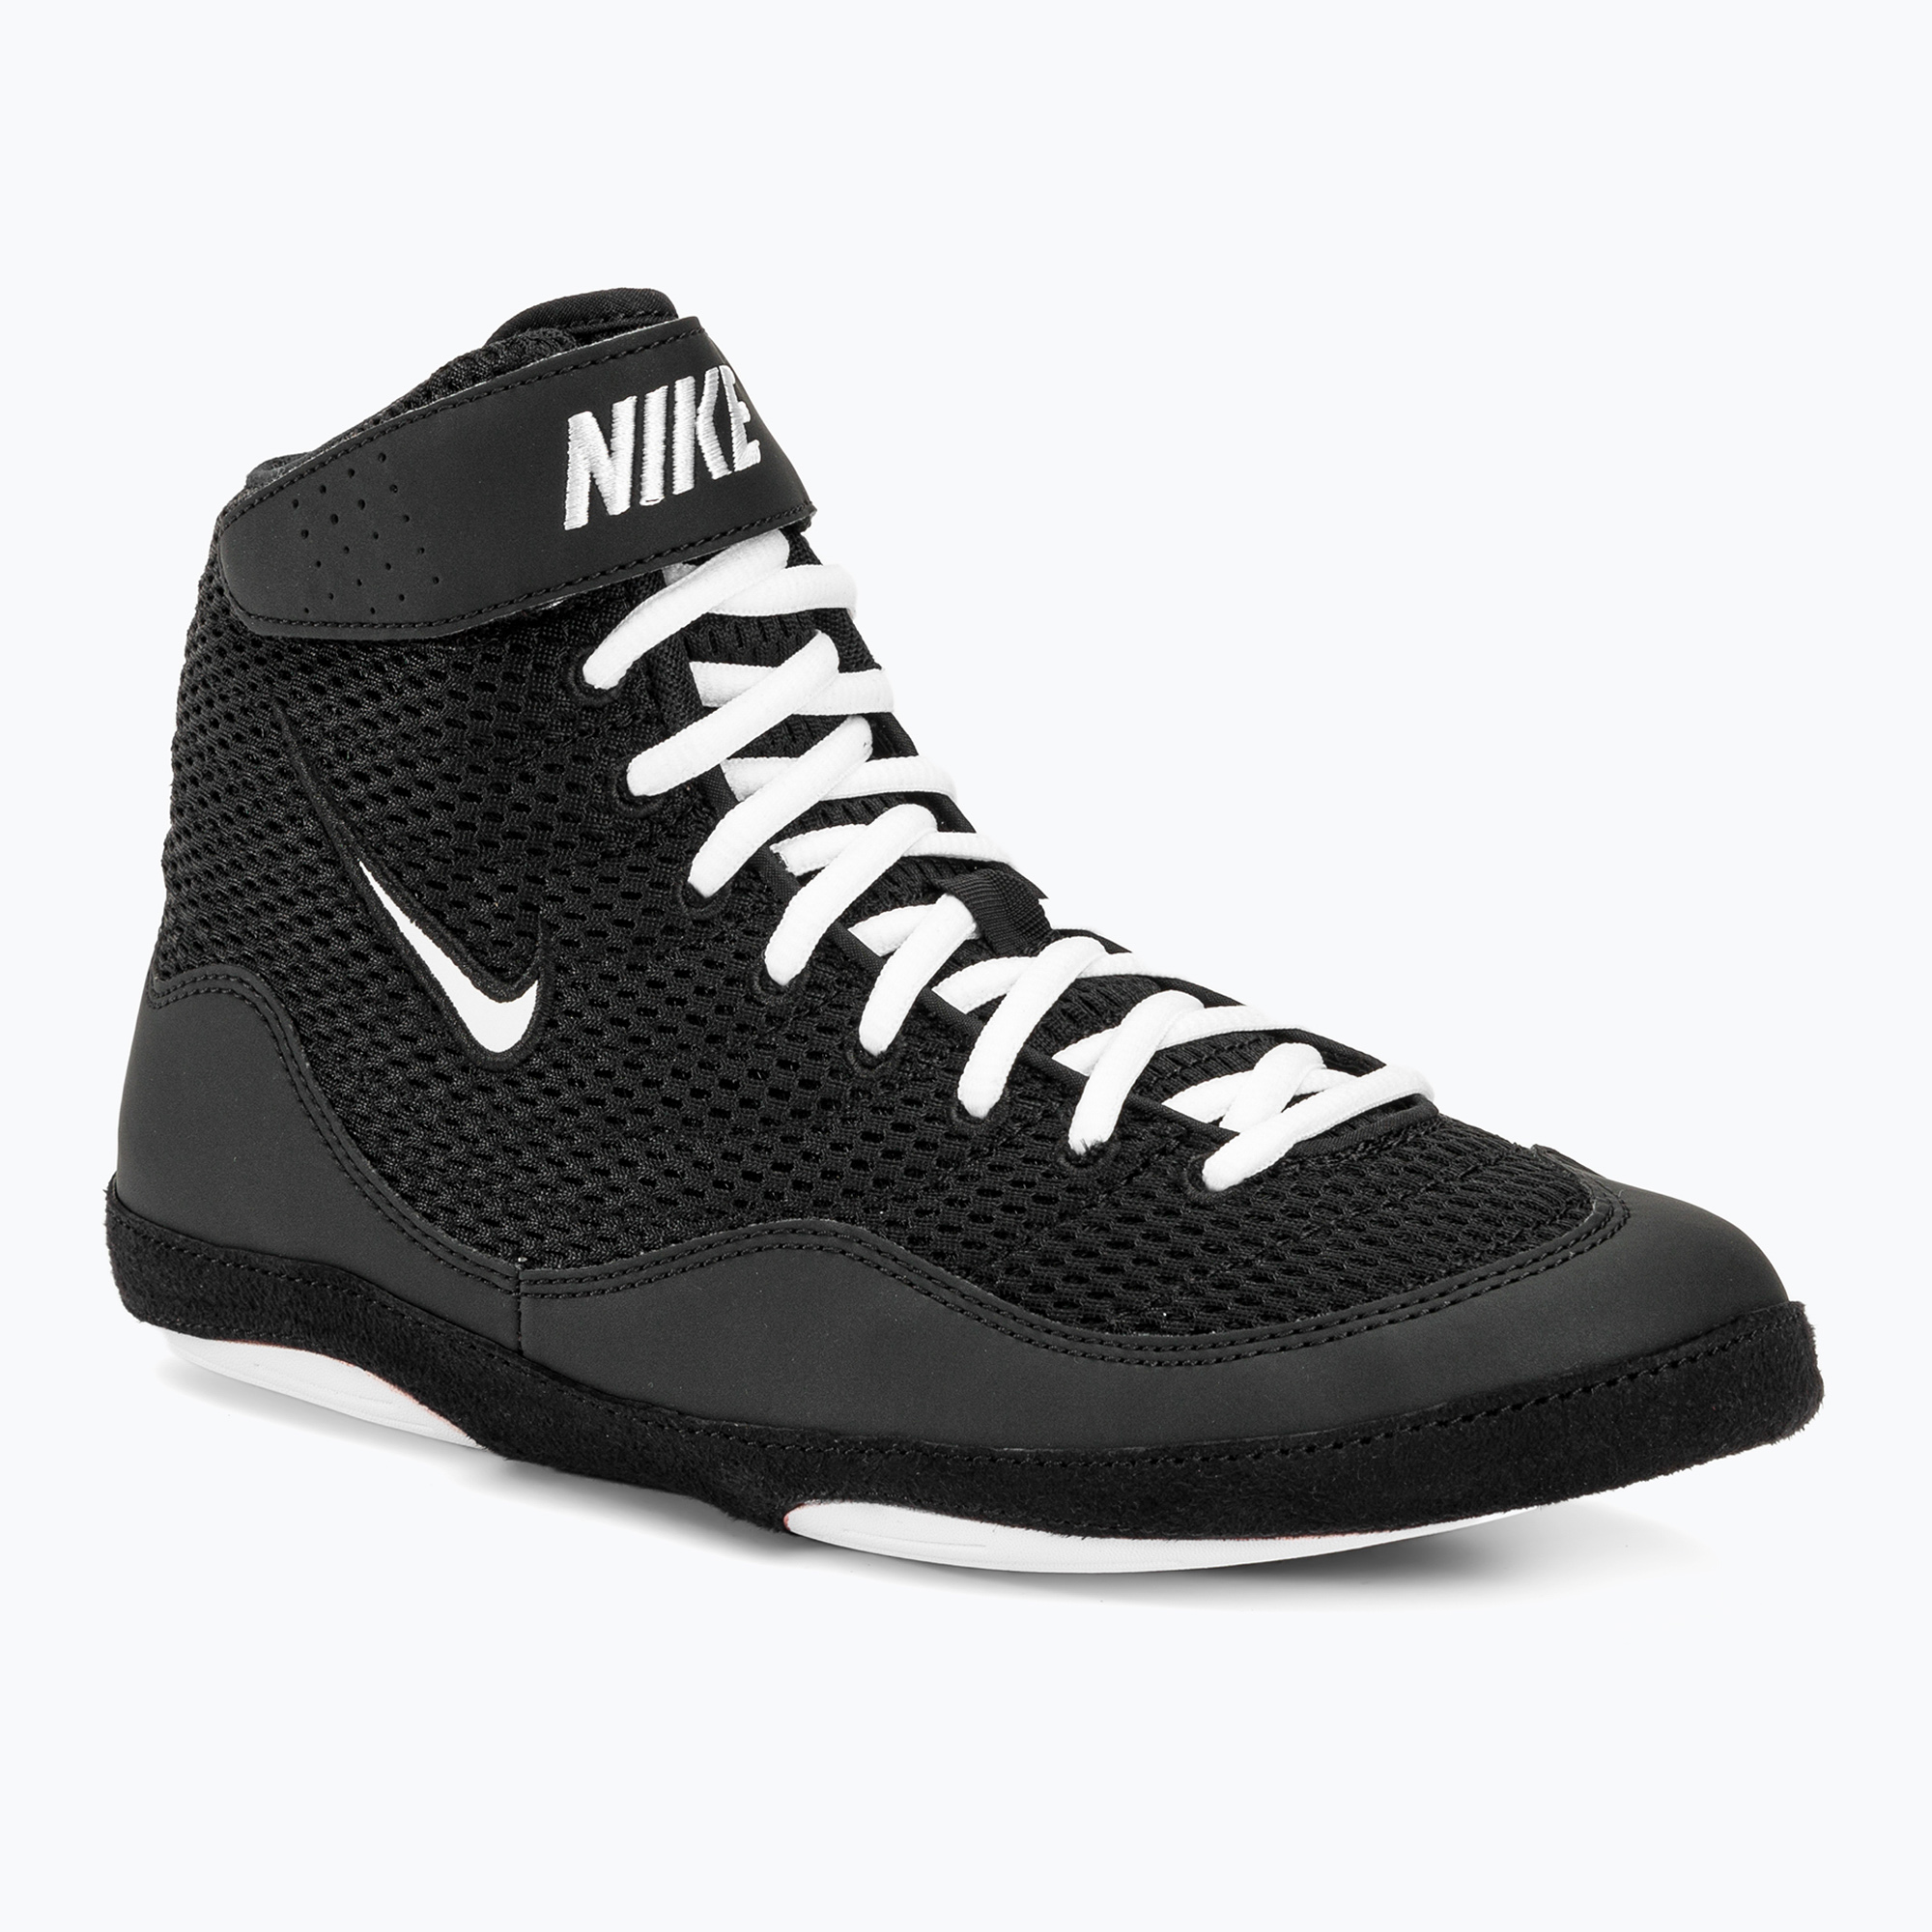 Încălțăminte de luptă pentru bărbați Nike Inflict 3 black/white